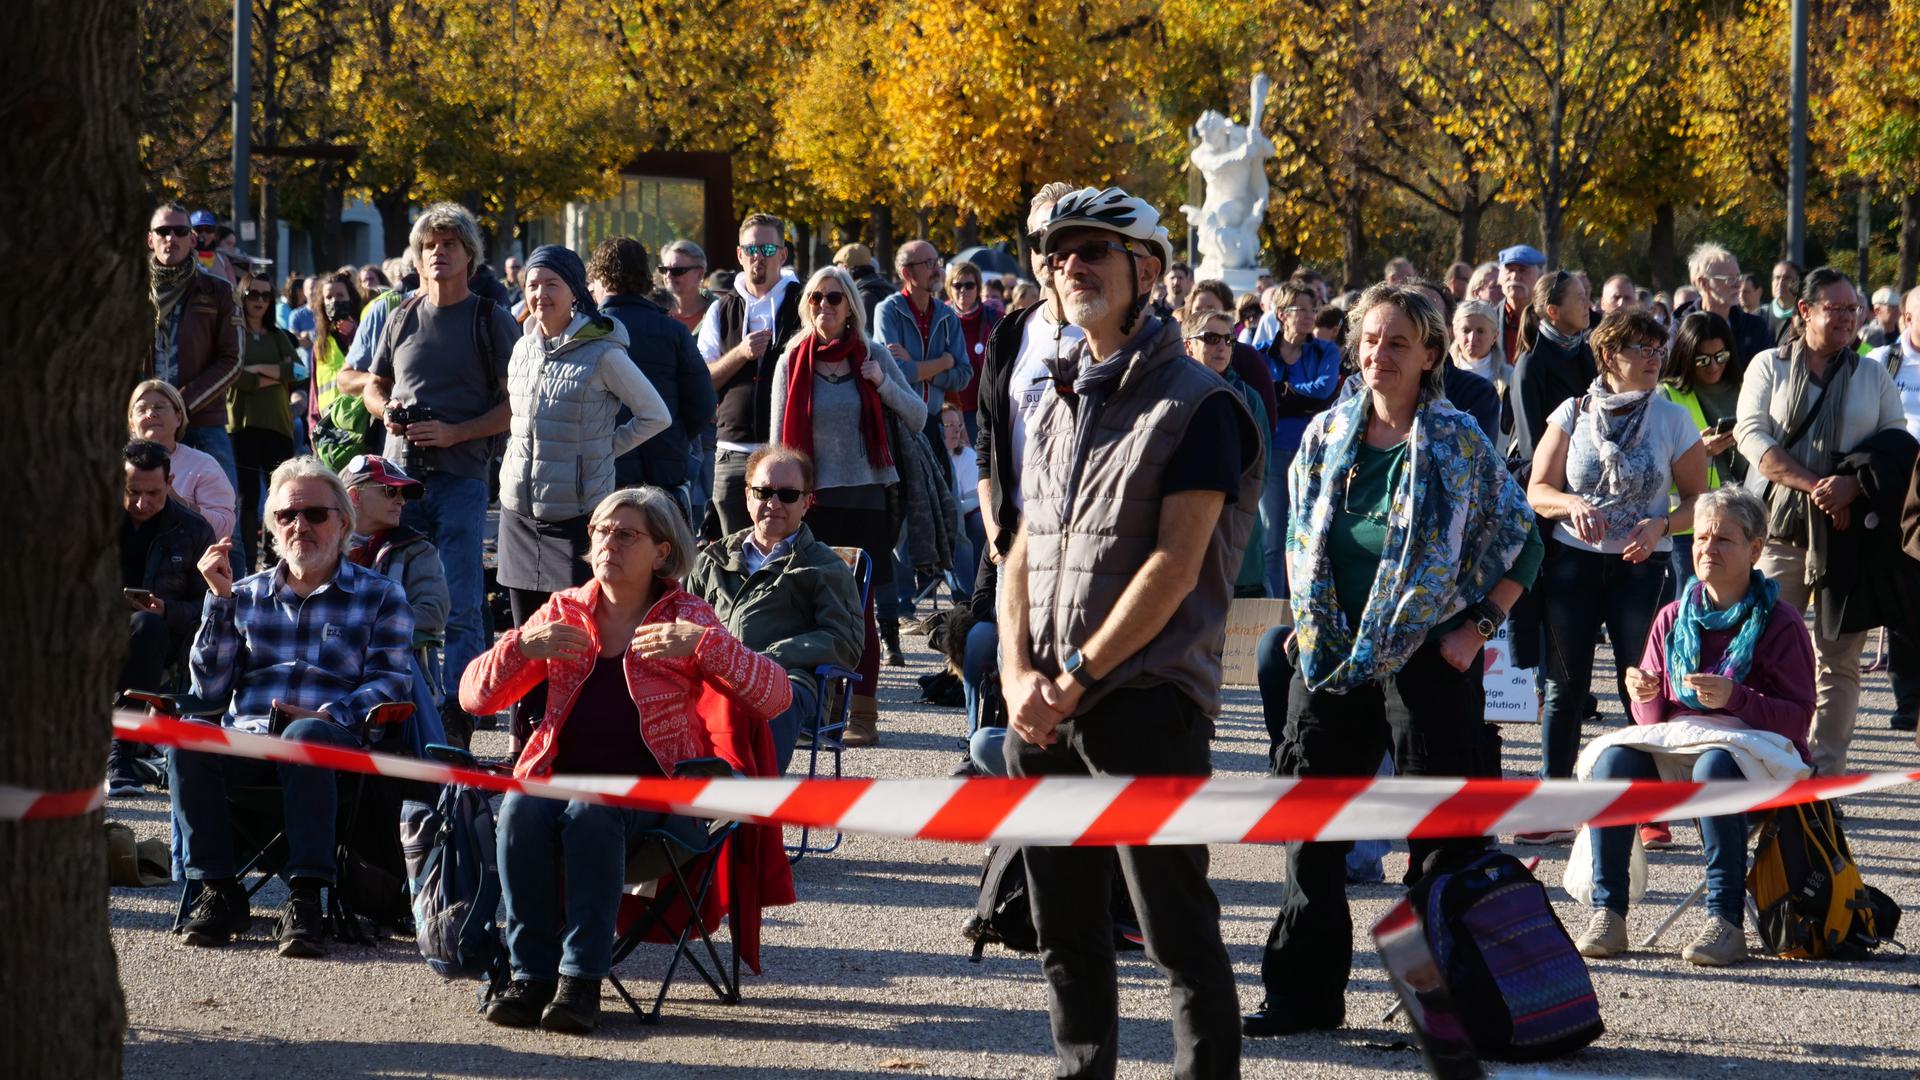 Rund 900 Menschen haben auf dem Karlsruher Schlossplatz gegen die Anti-Corona-Maßnahmen der Regierung demonstriert. Weil Teilnehmer Abstandsregeln nicht einhielten, stand die Demonstration kurz vor der Auflösung.